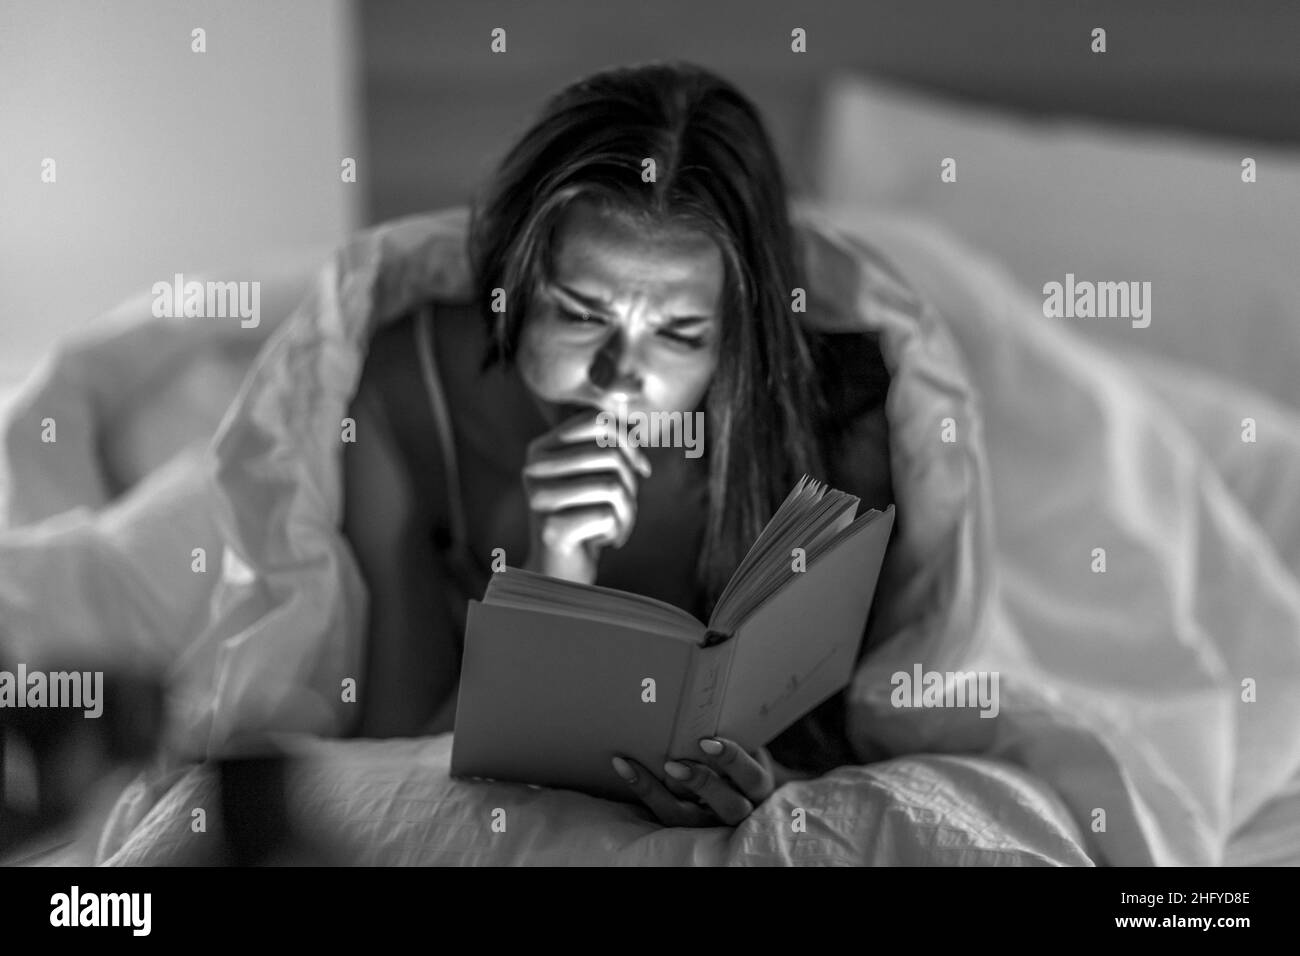 Selbstentwicklung. Entspannung. Literatur. Die schöne Frau liest in ihrem Schlafzimmer vor dem Bett aufmerksam unter schwachem Licht ein Buch. Stockfoto